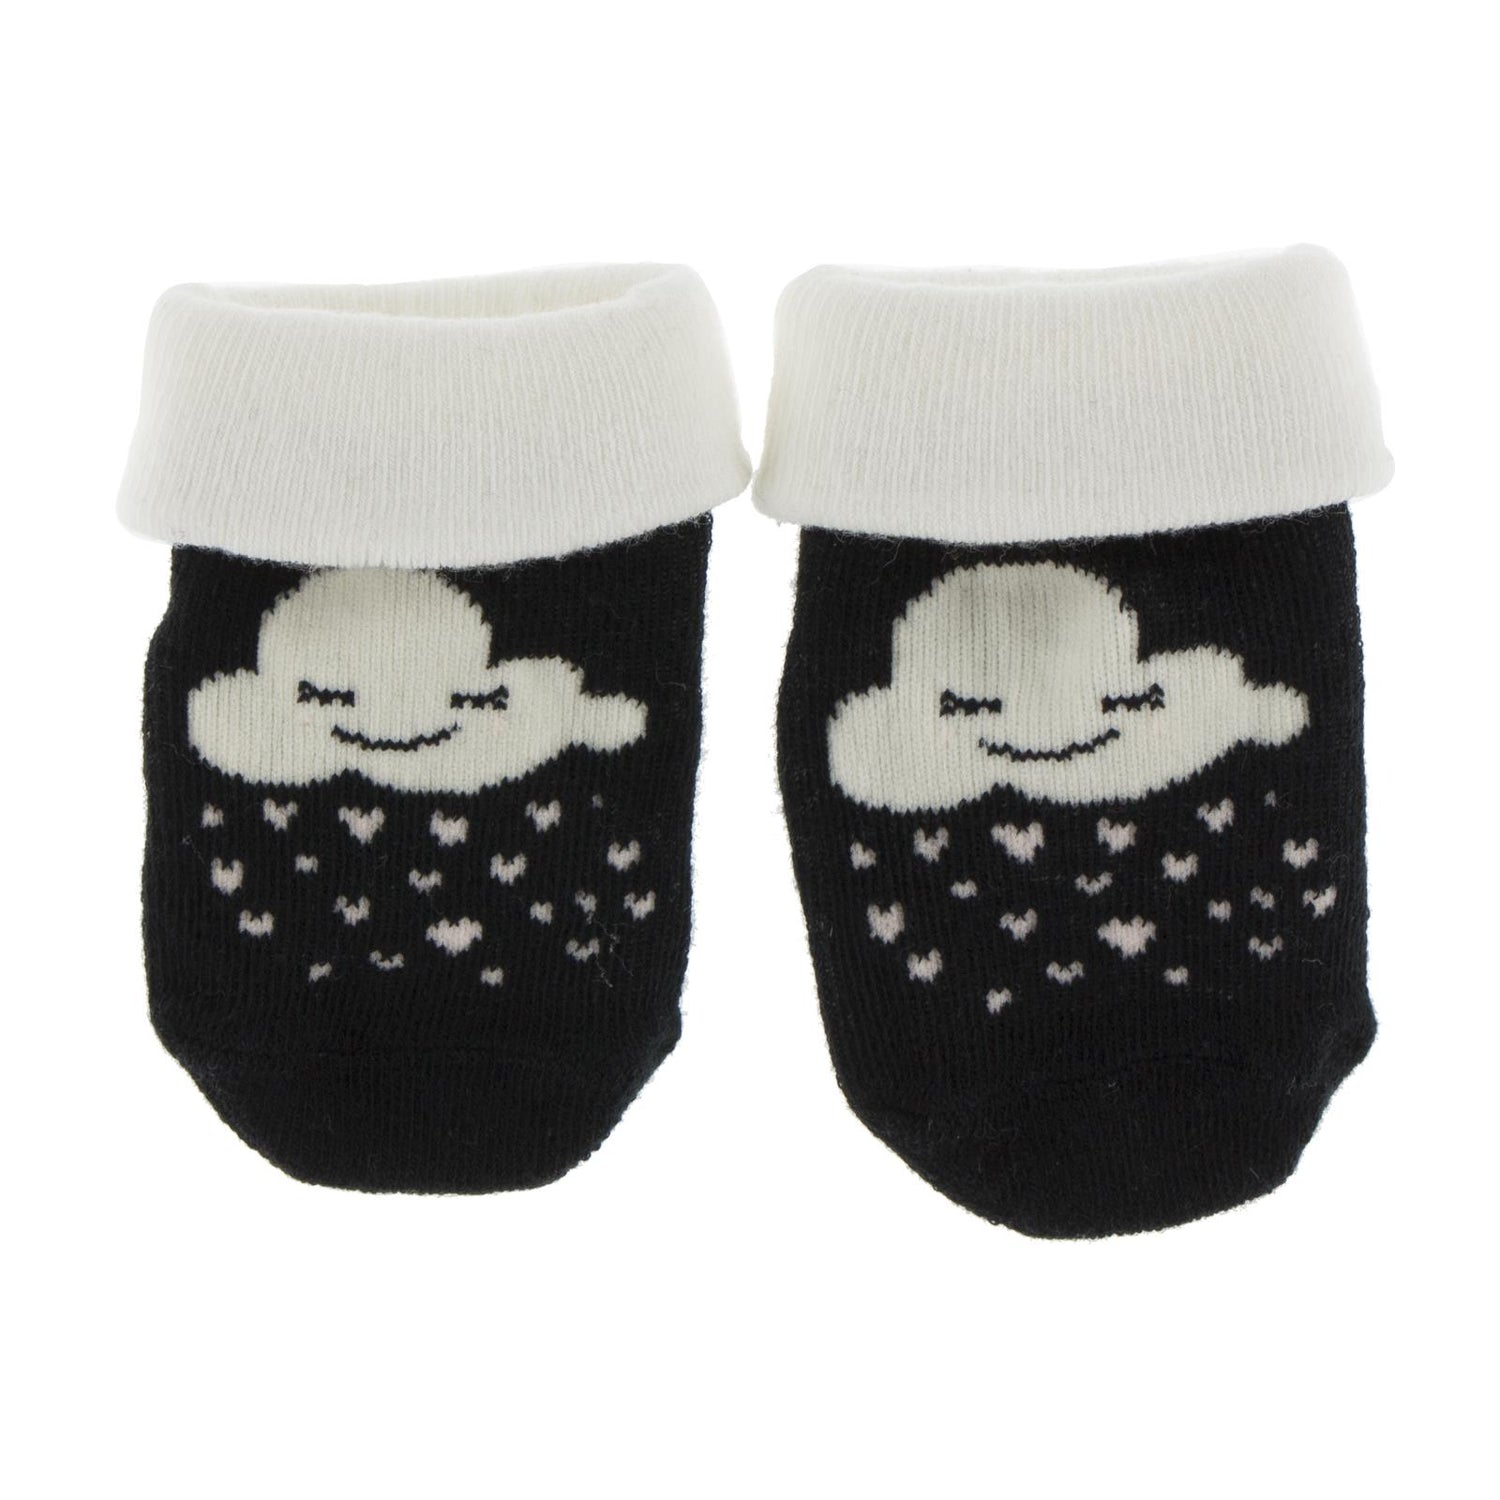 Print Baby Non-Slip Socks in Black Cloud